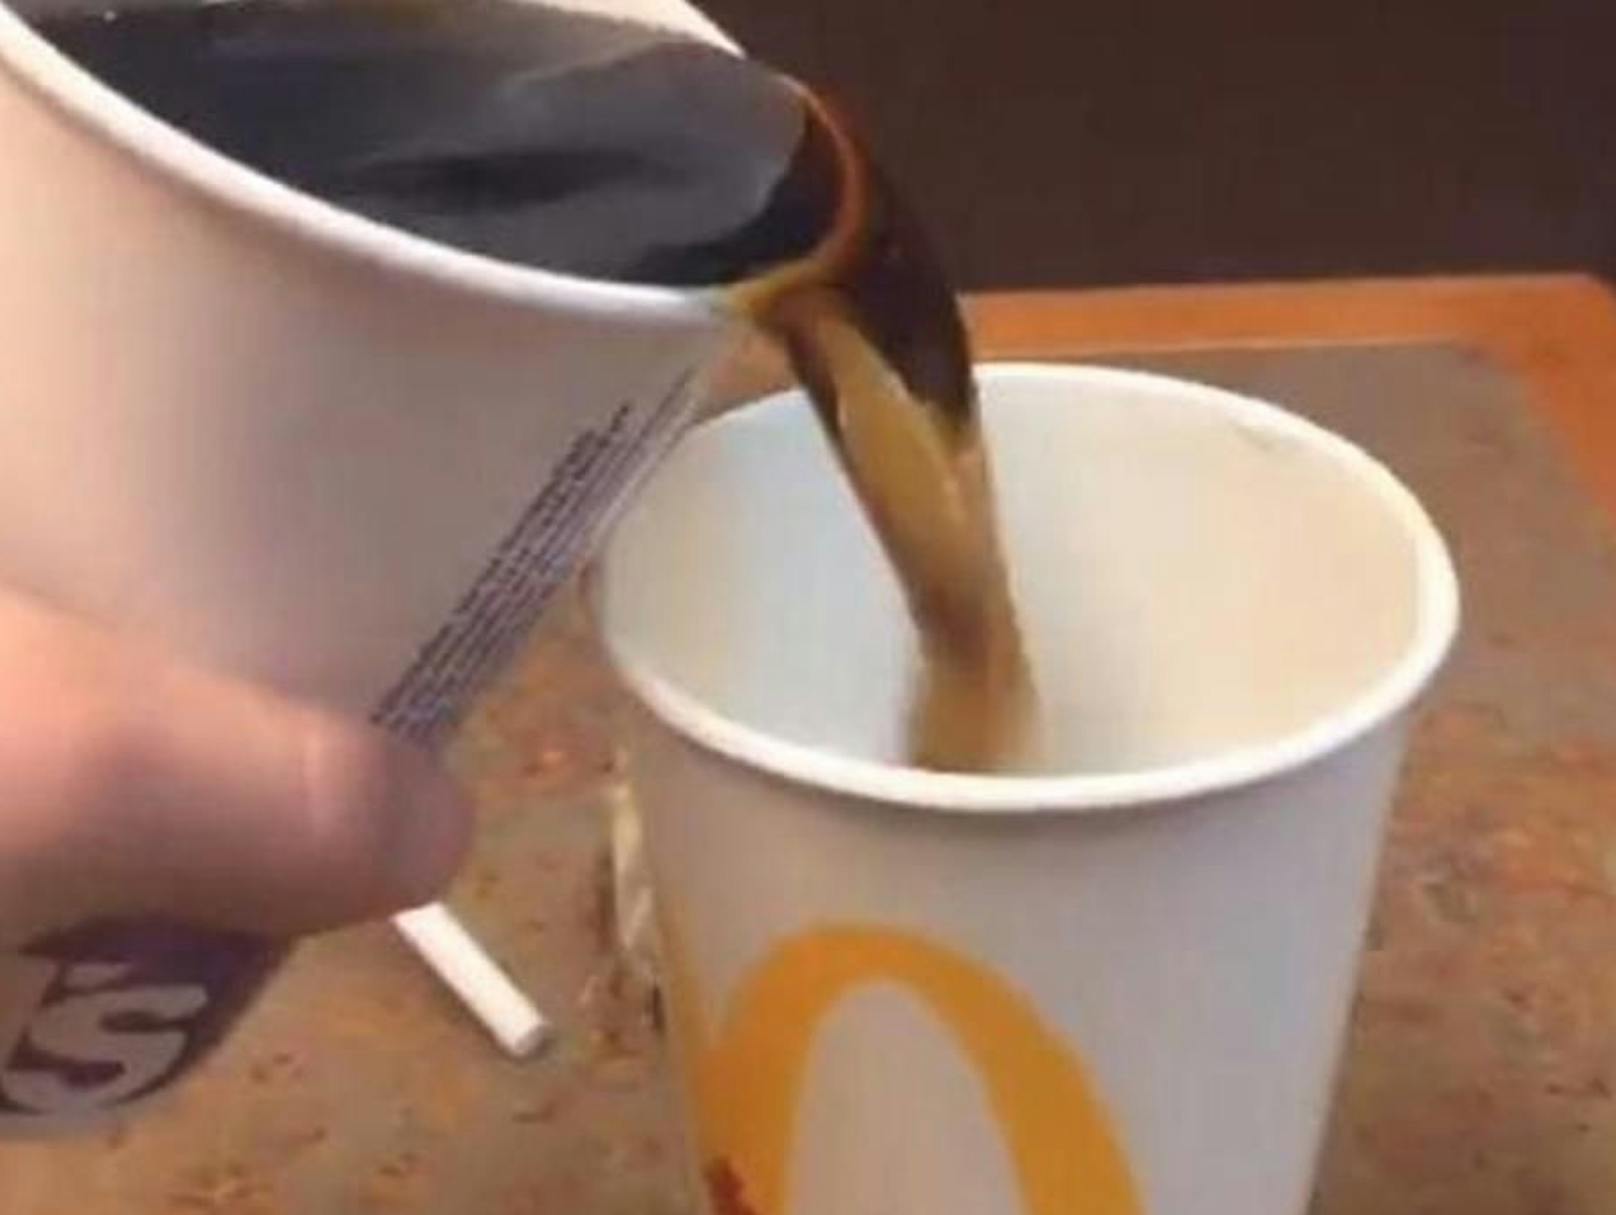 Das Video soll beweisen, dass McDonald’s beim Auffüllen der Getränke trickst.